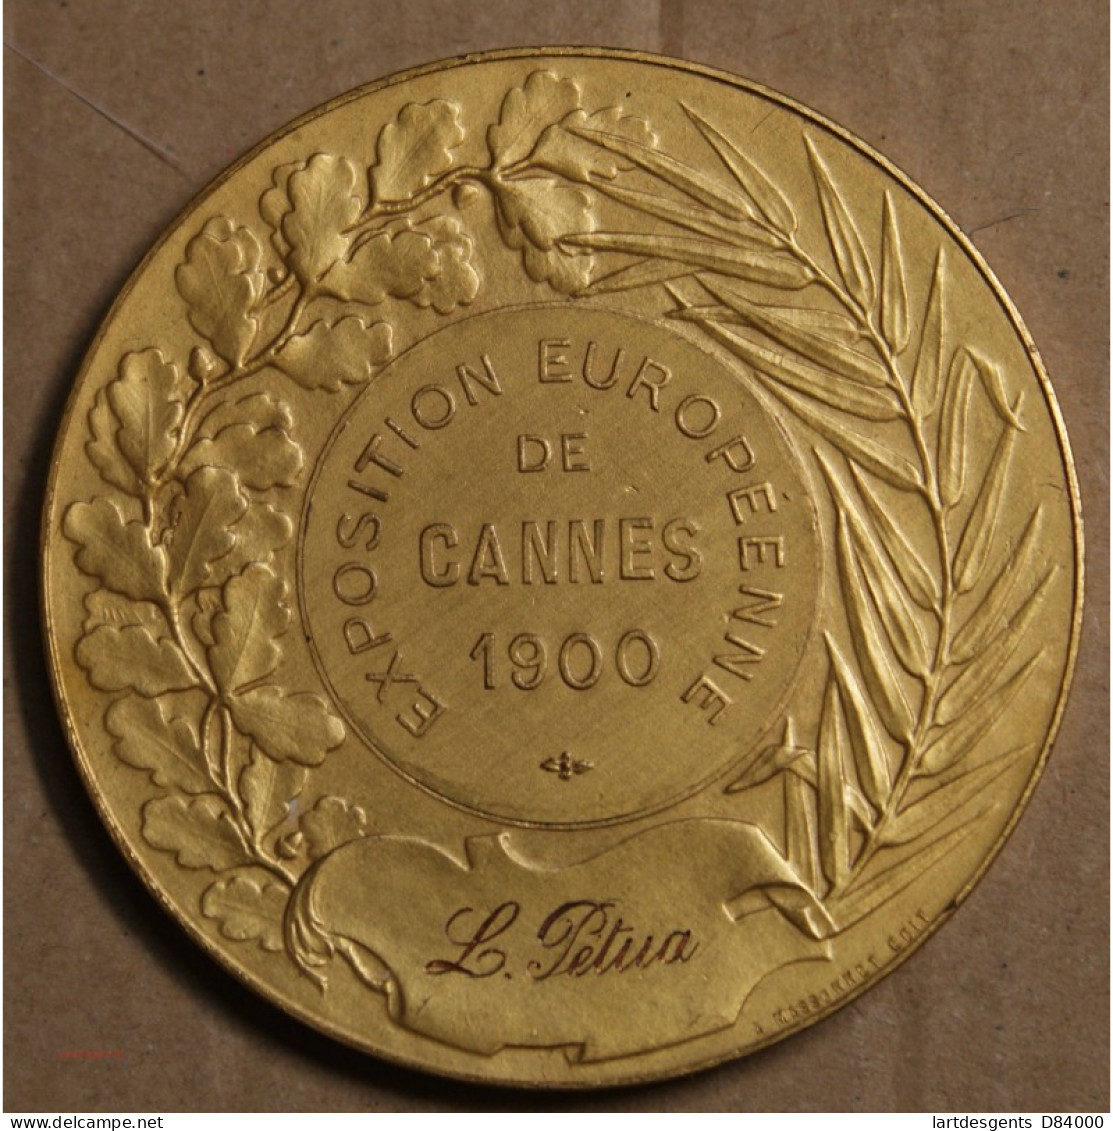 Médaille "Exposition Européenne De Cannes 1900, Attribué à Pétua (12), Lartdesgents.fr - Monarchia / Nobiltà